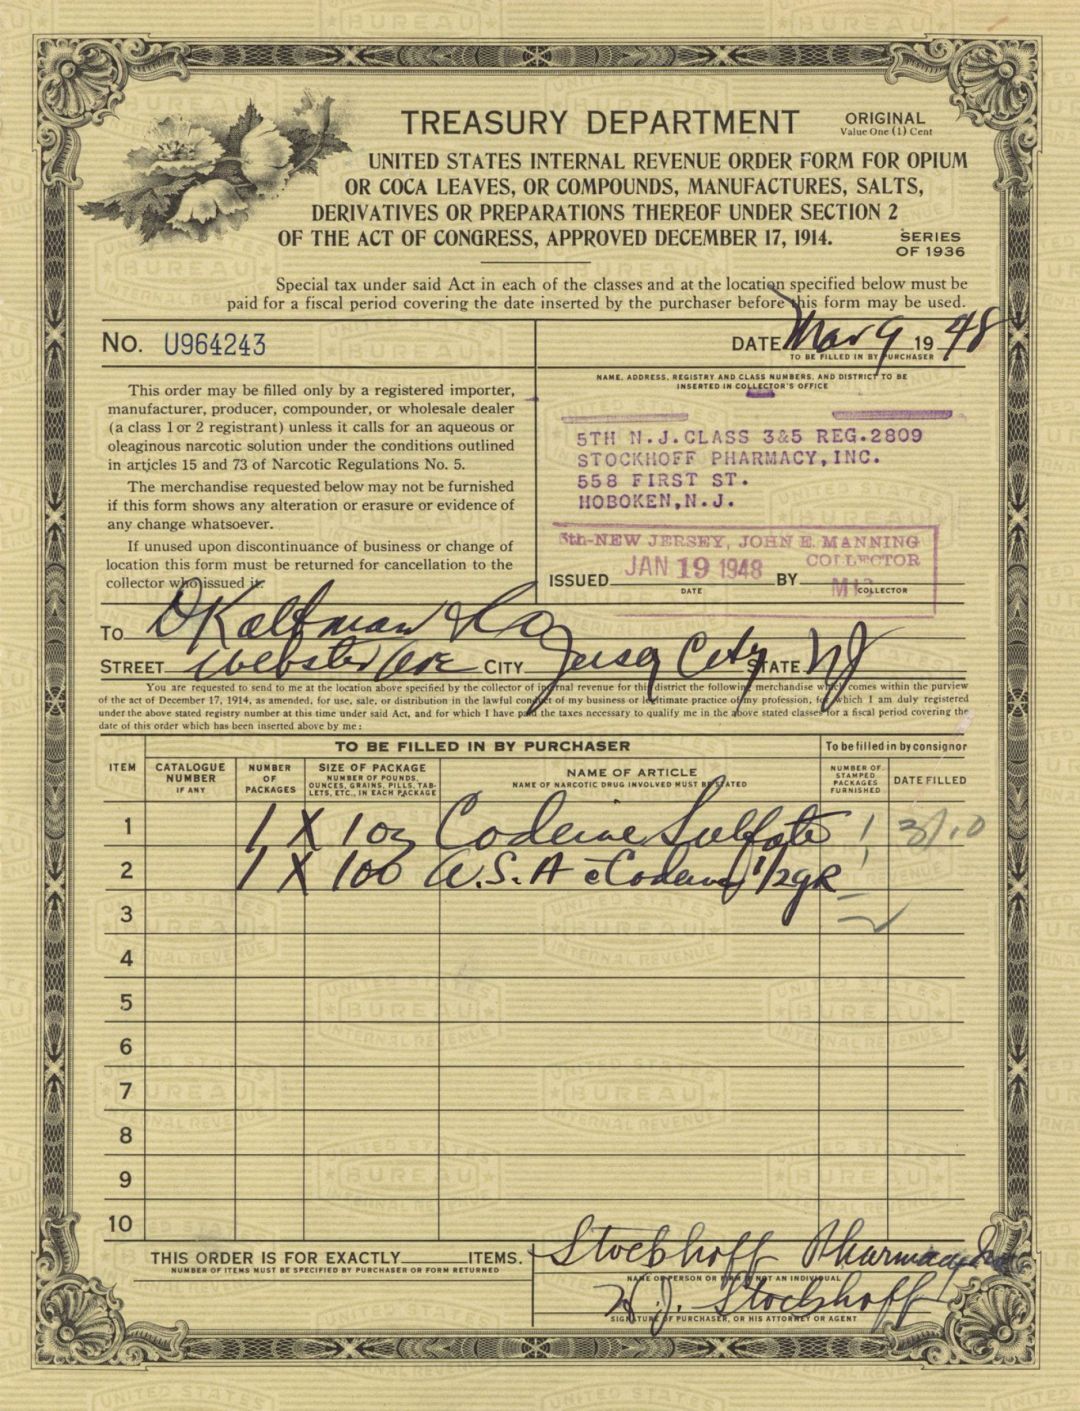 Opium-Coca Leaves - 1930's-1940's dated Drugs Order Form - U.S. Treasury Departm